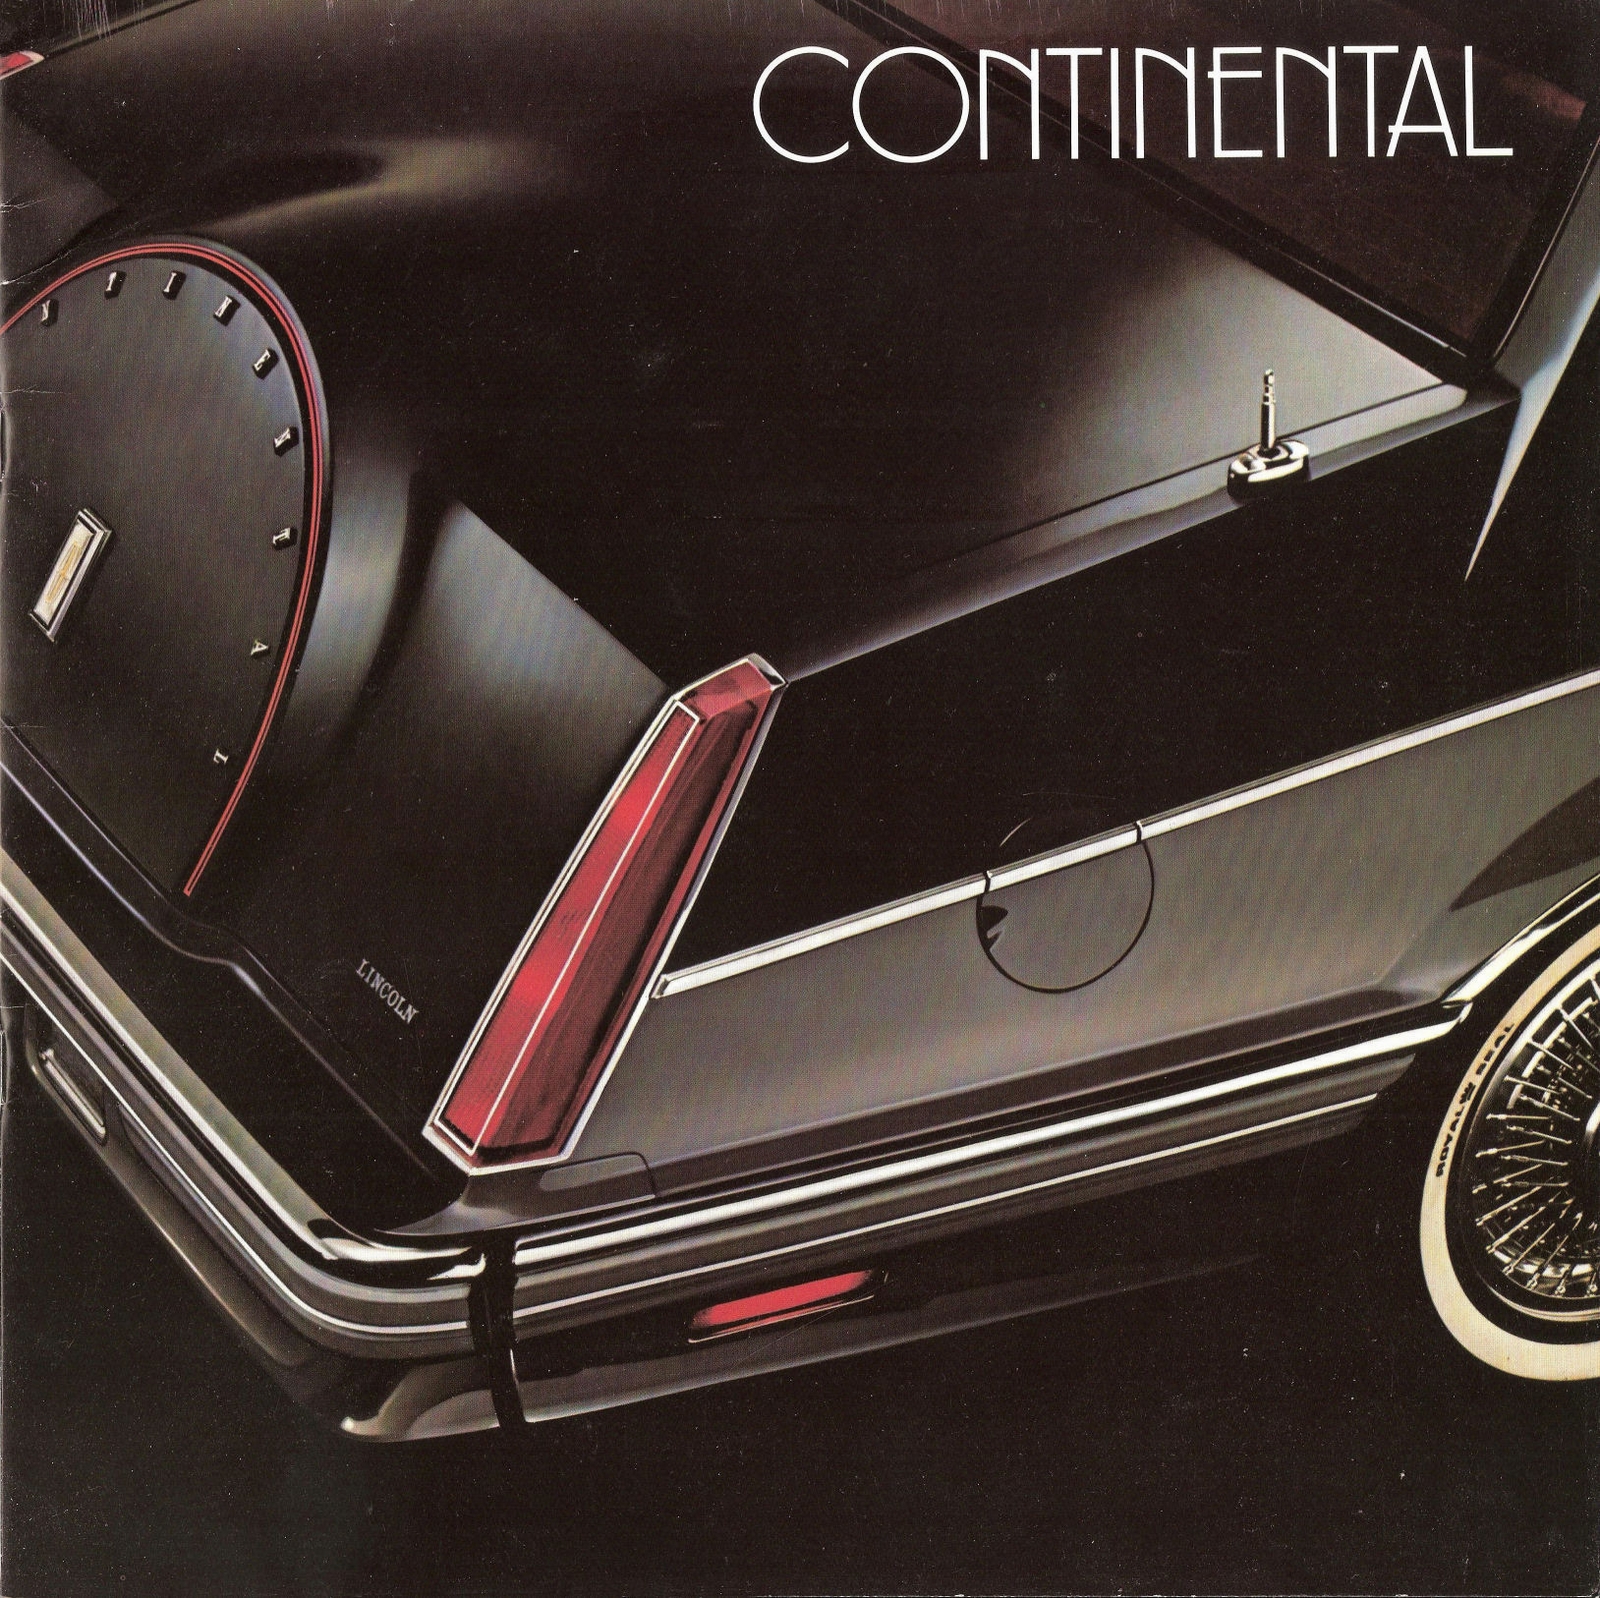 n_1982 Lincoln Continental-01.jpg